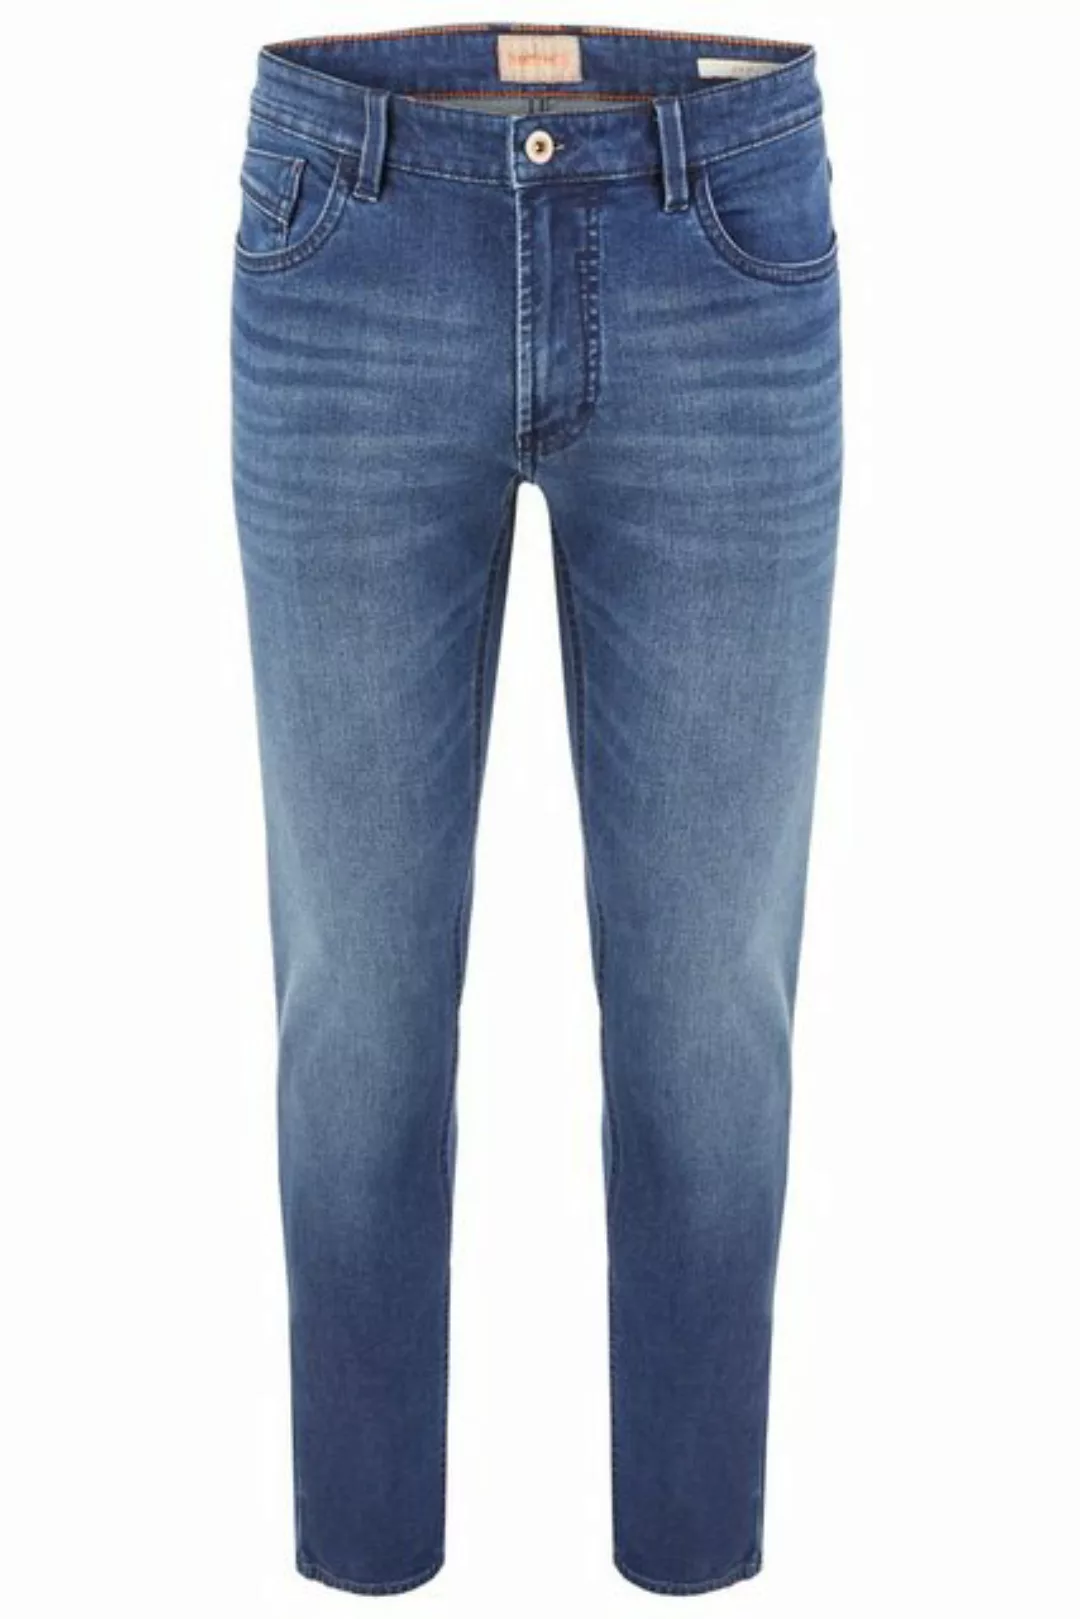 Hattric 5-Pocket-Jeans HATTRIC DAVIS rinsed dark blue 688585 9348.45 günstig online kaufen